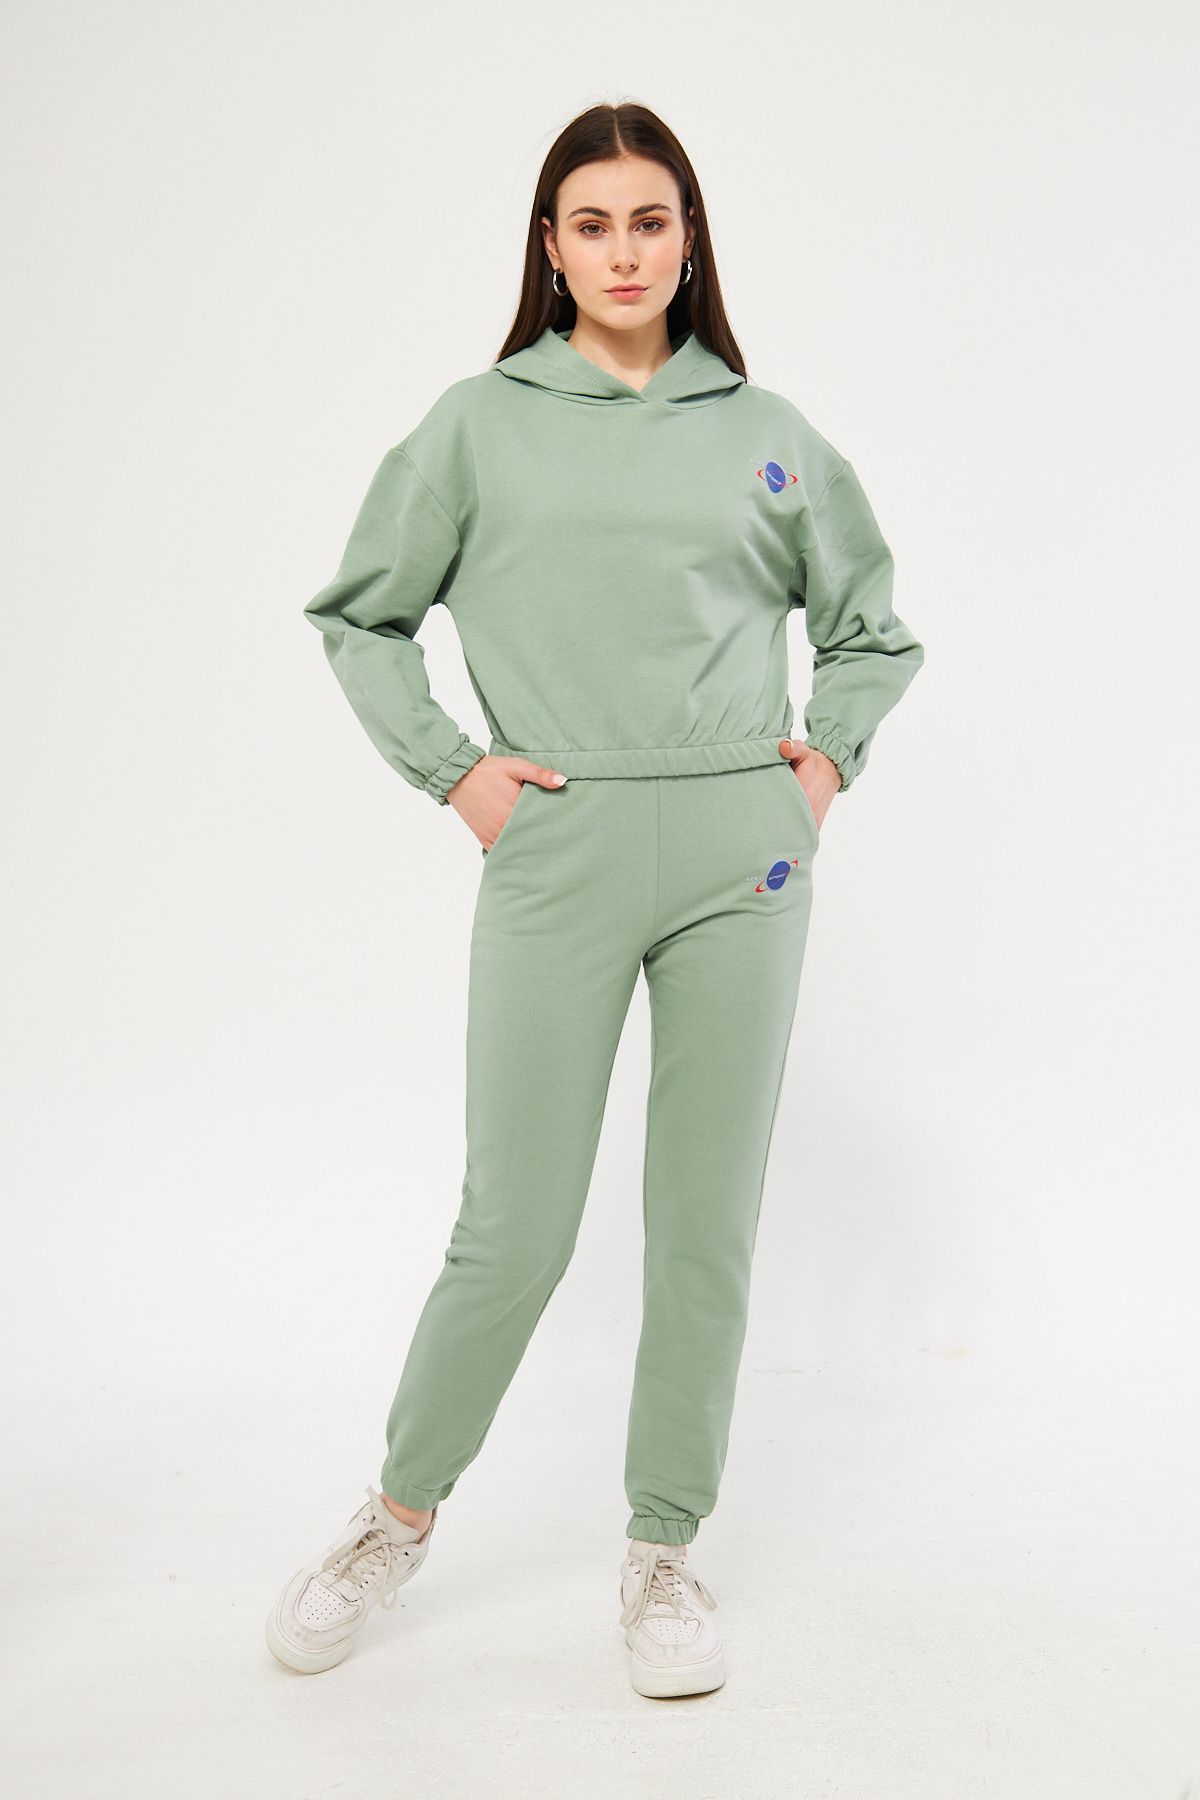 LİVE SPORT Kadın 3 iplik Pamuklu İçi Şardonsuz Eşofman Takımı Mint Yeşili